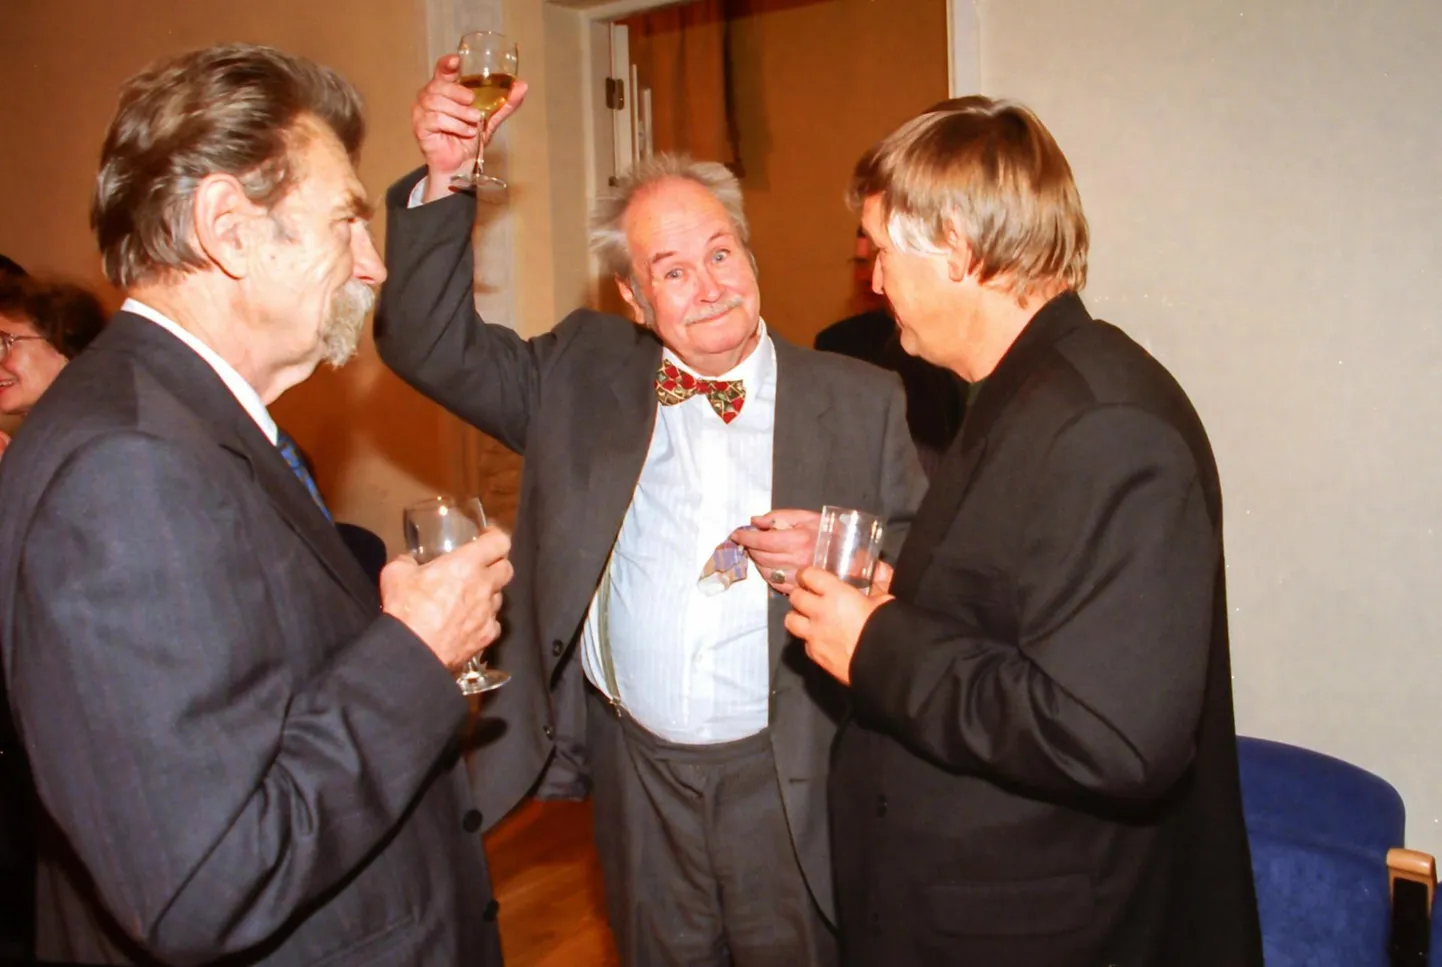 Siiralt rõõmus Andres Vanapa (pildil keskel) ühel varasemal ajal. Vasakul Heino Kiik, paremal Toomas Vint.

 